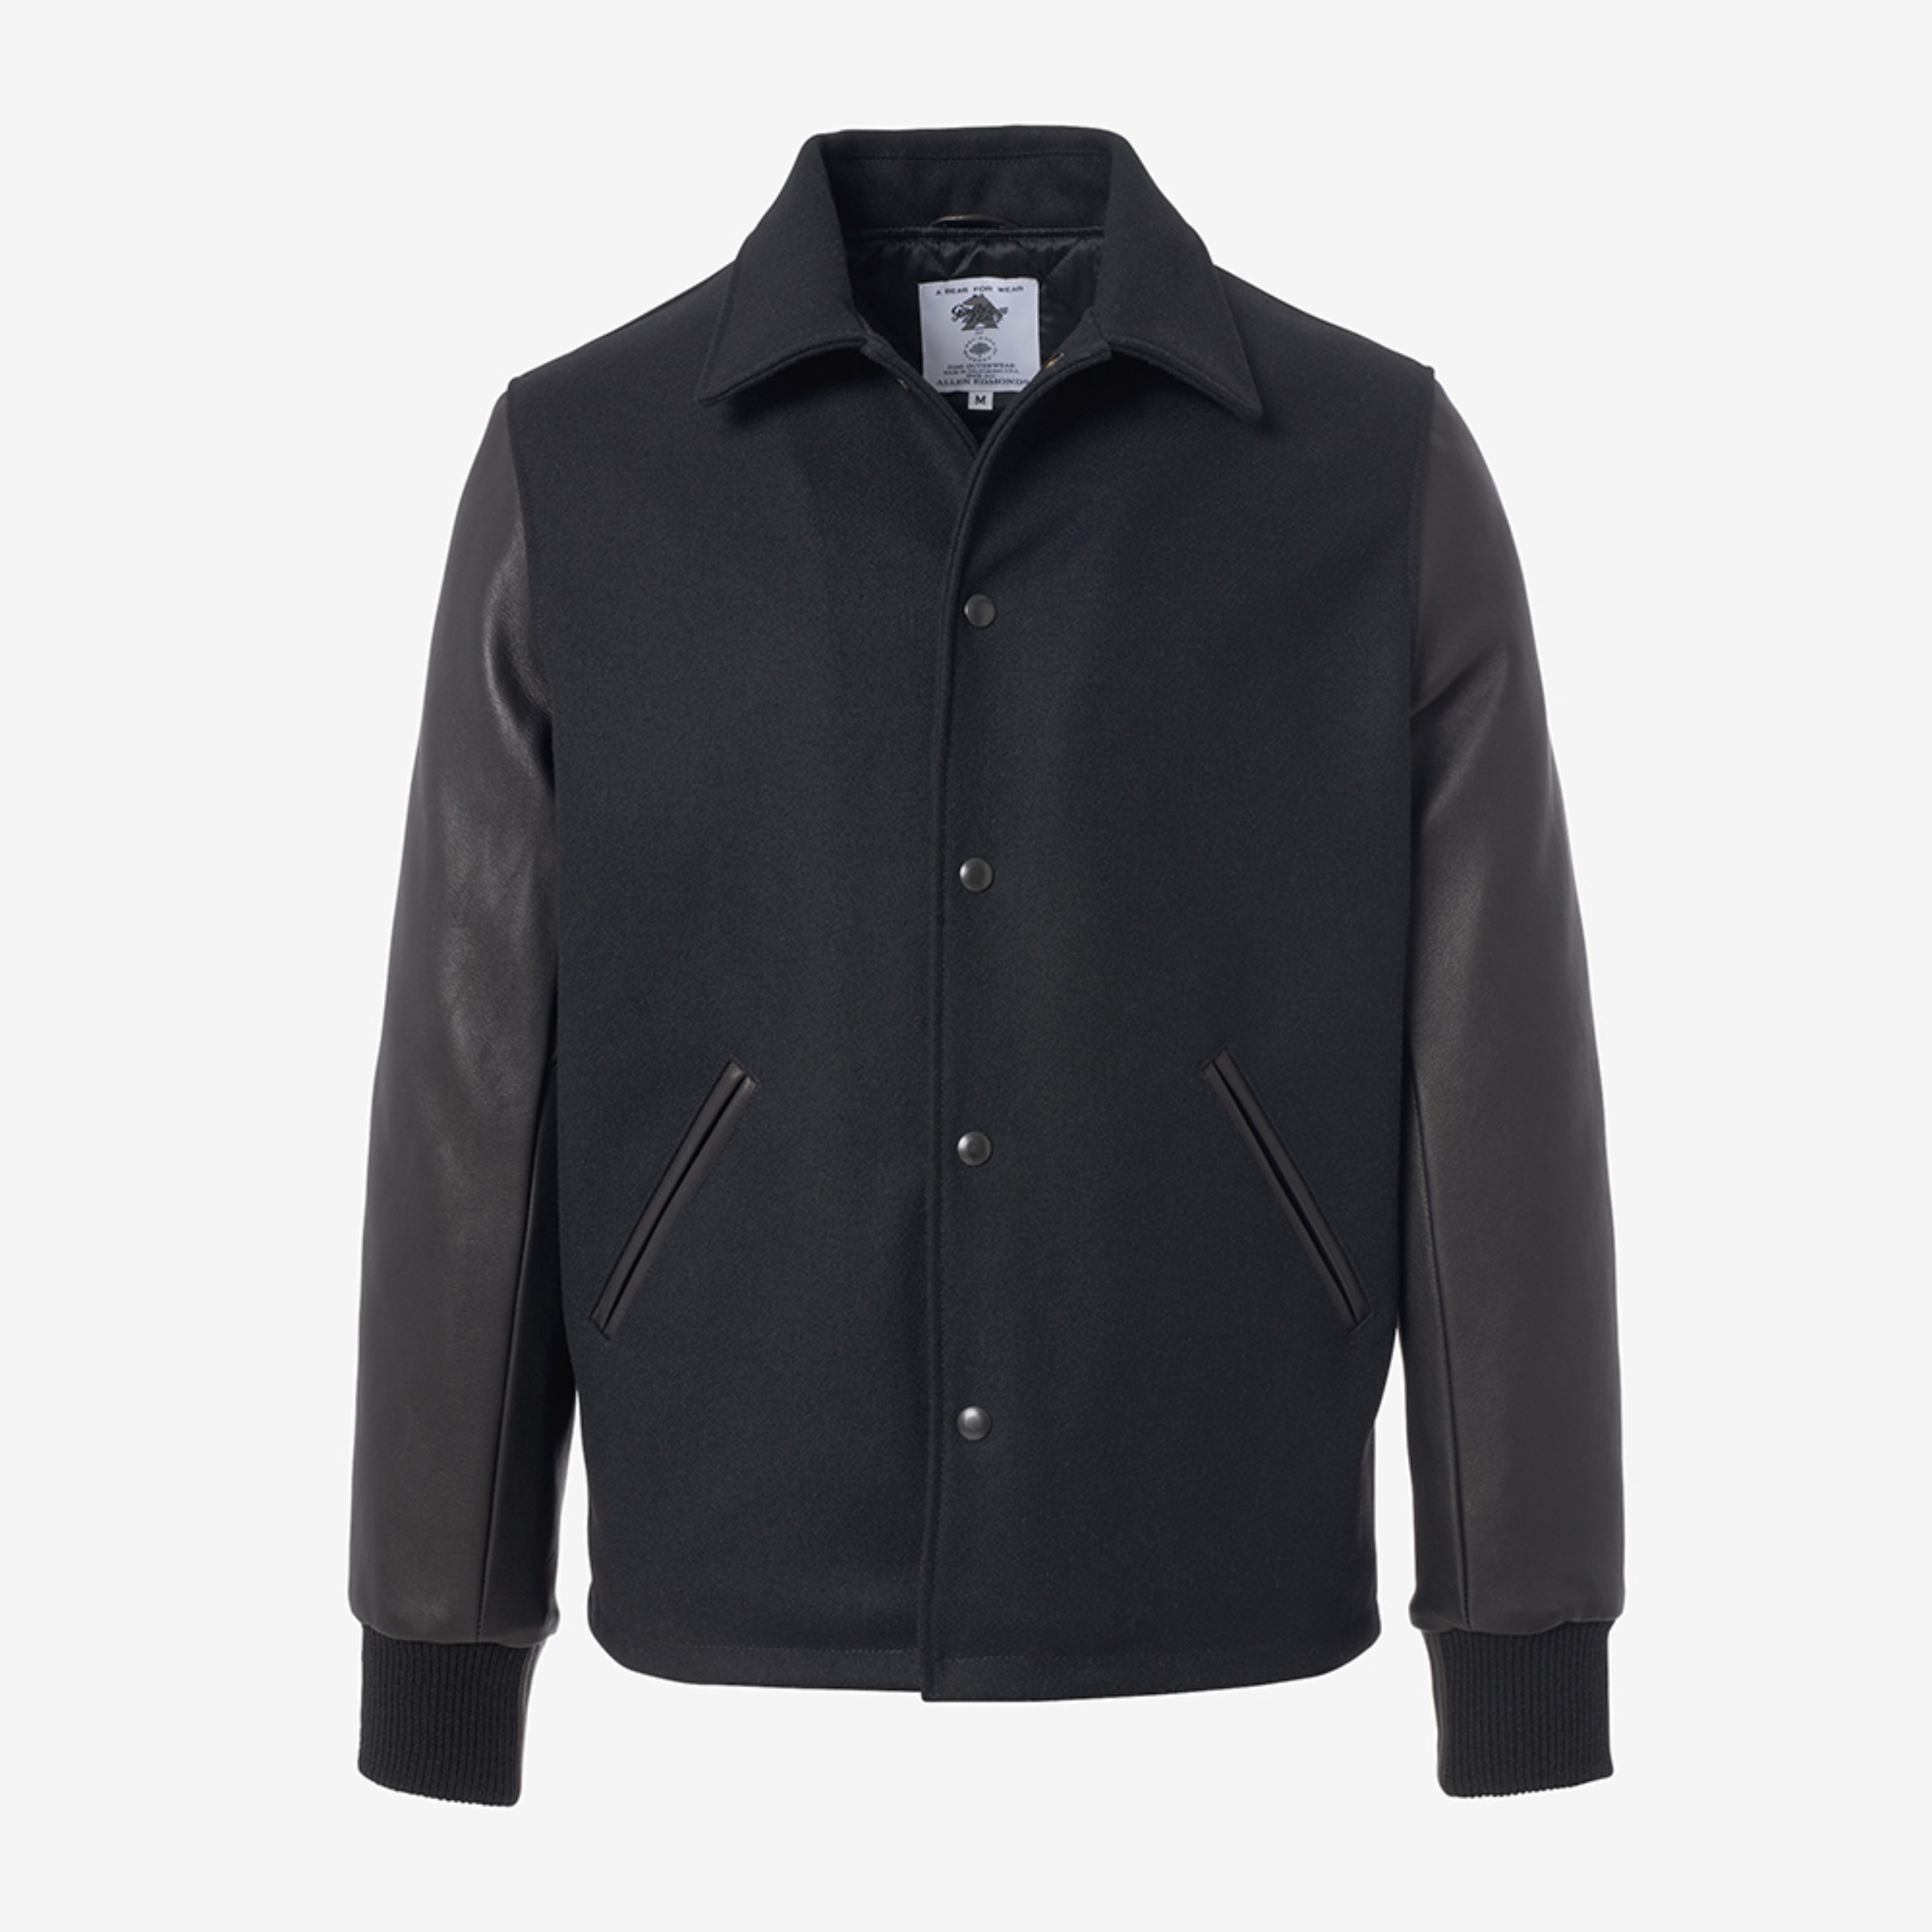 Coaches Jacket by Golden Bear | Men's Outerwear | Allen Edmonds